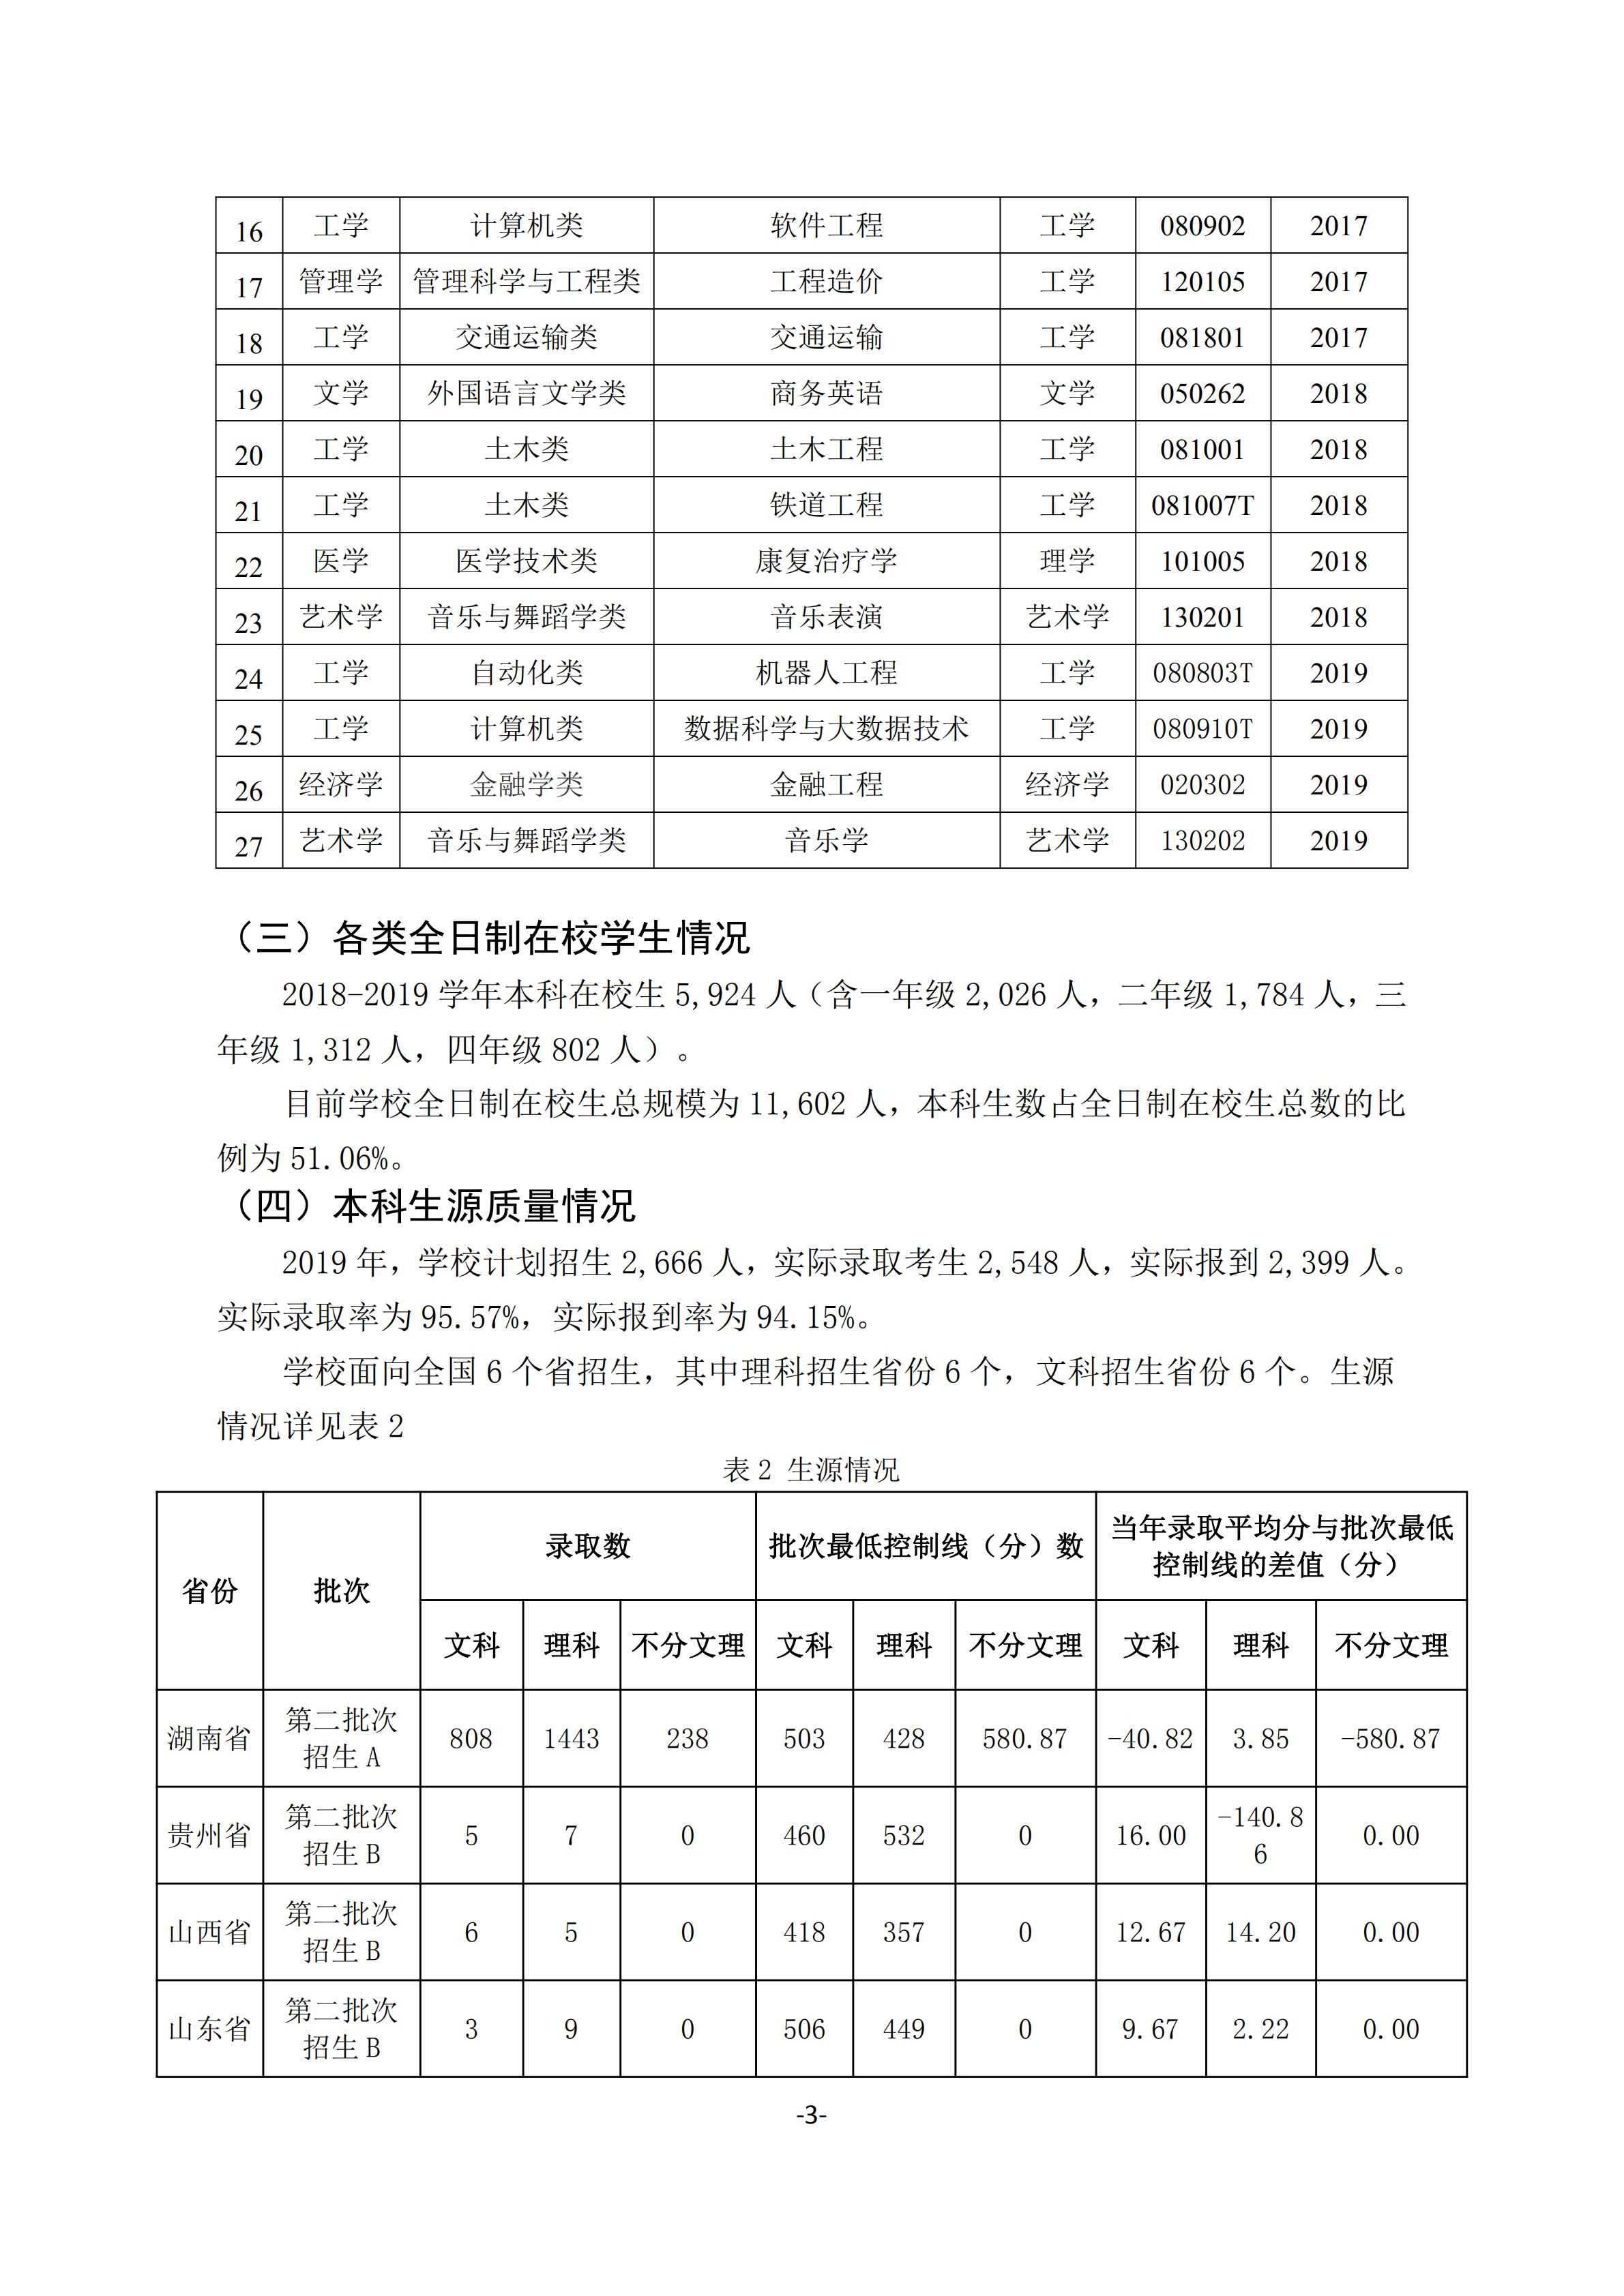 1.湖南交通工程学院2018-2019学年本科教学质量报告_02.jpg